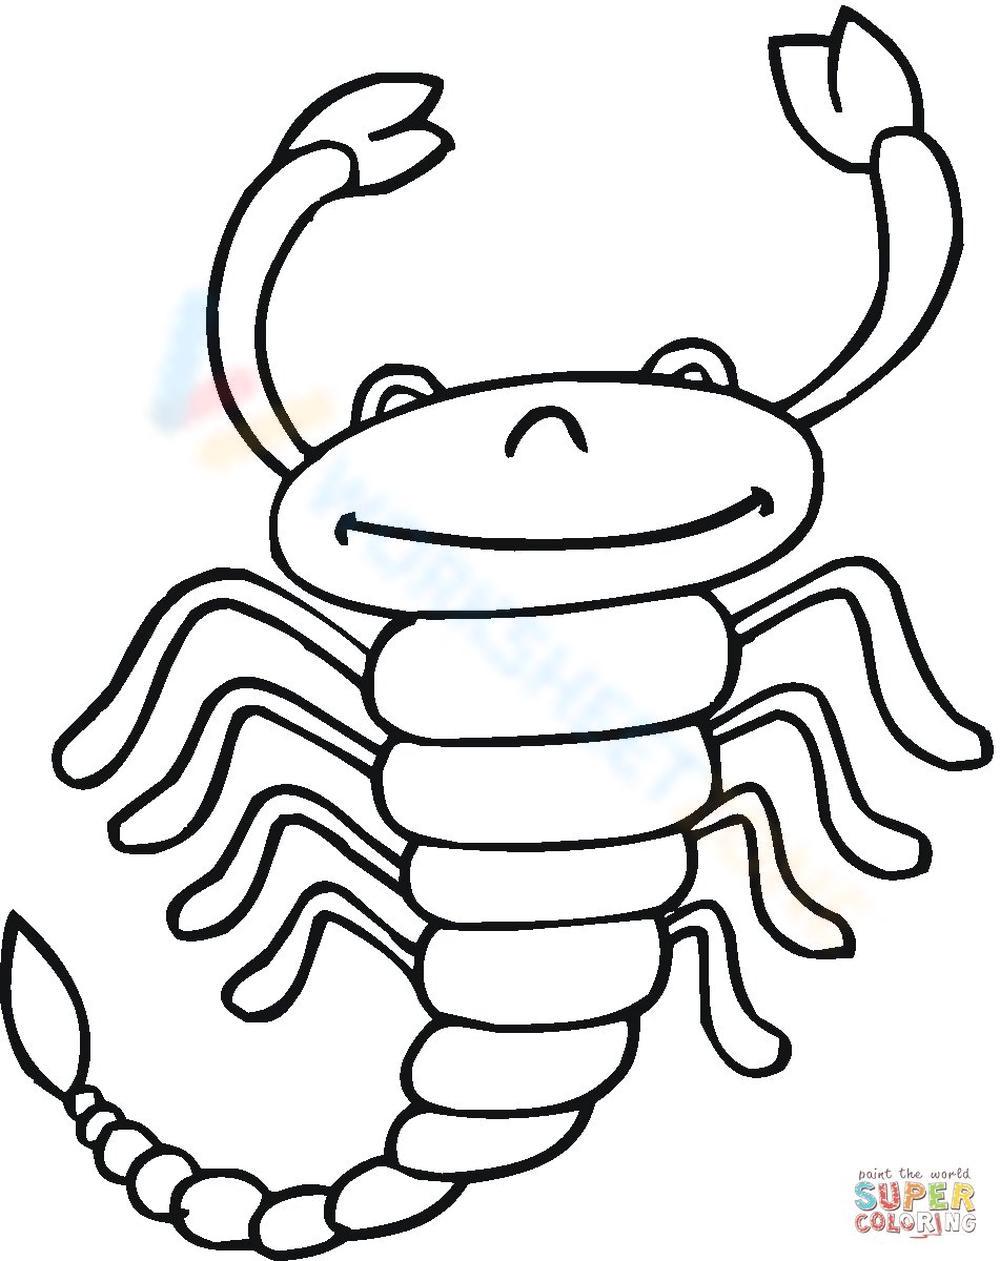 Chibi scorpion